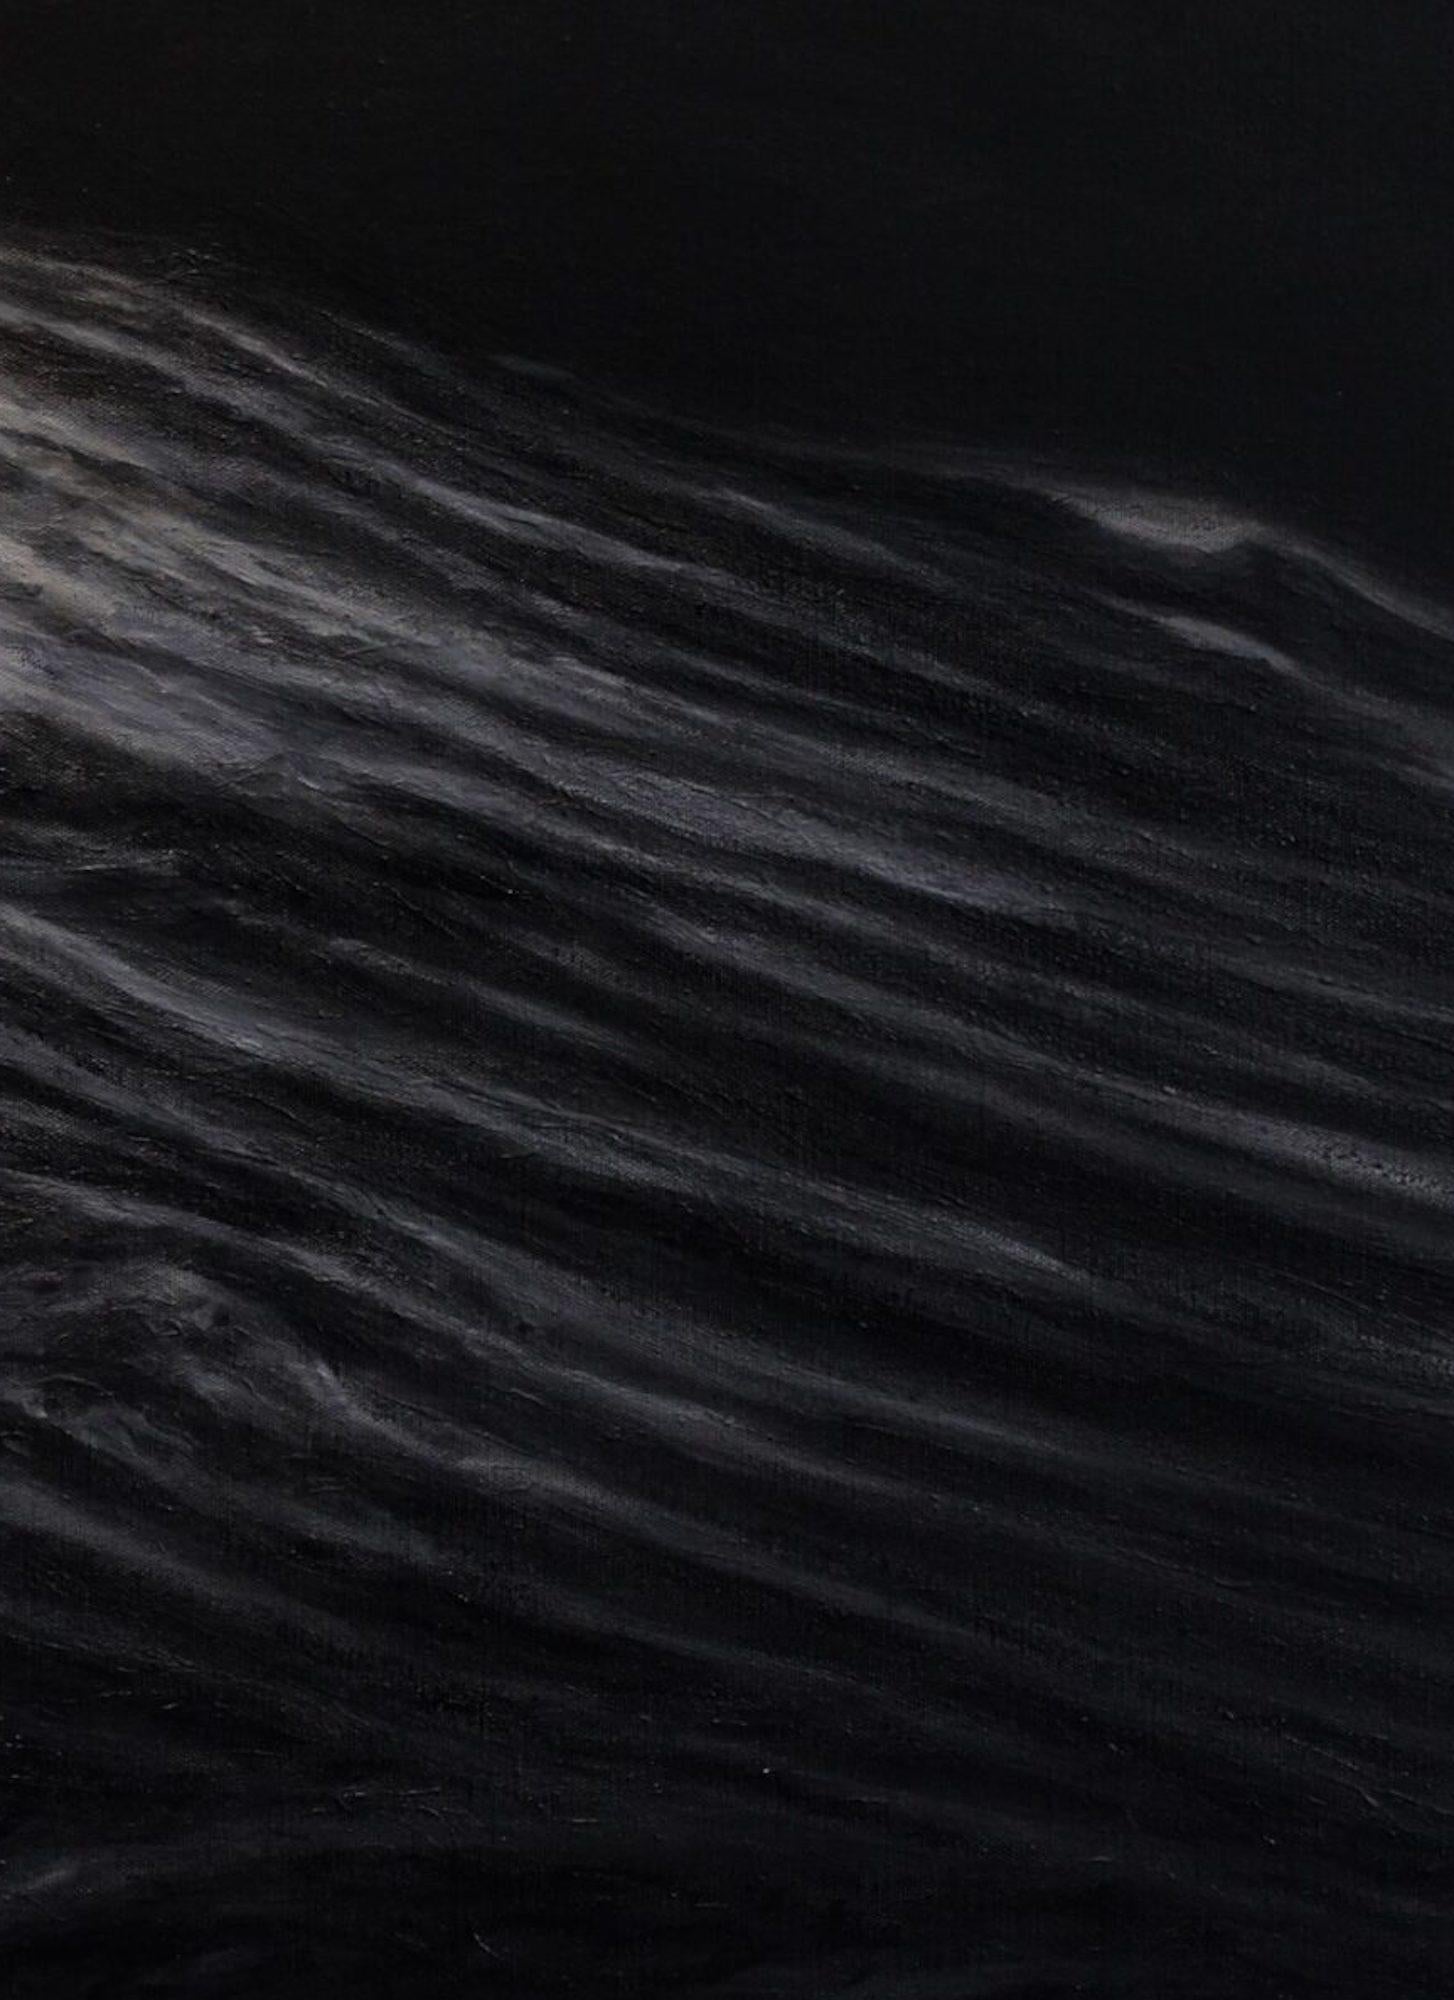 Requiem by Franco Salas Borquez - Black & white painting, ocean waves, seascape For Sale 2